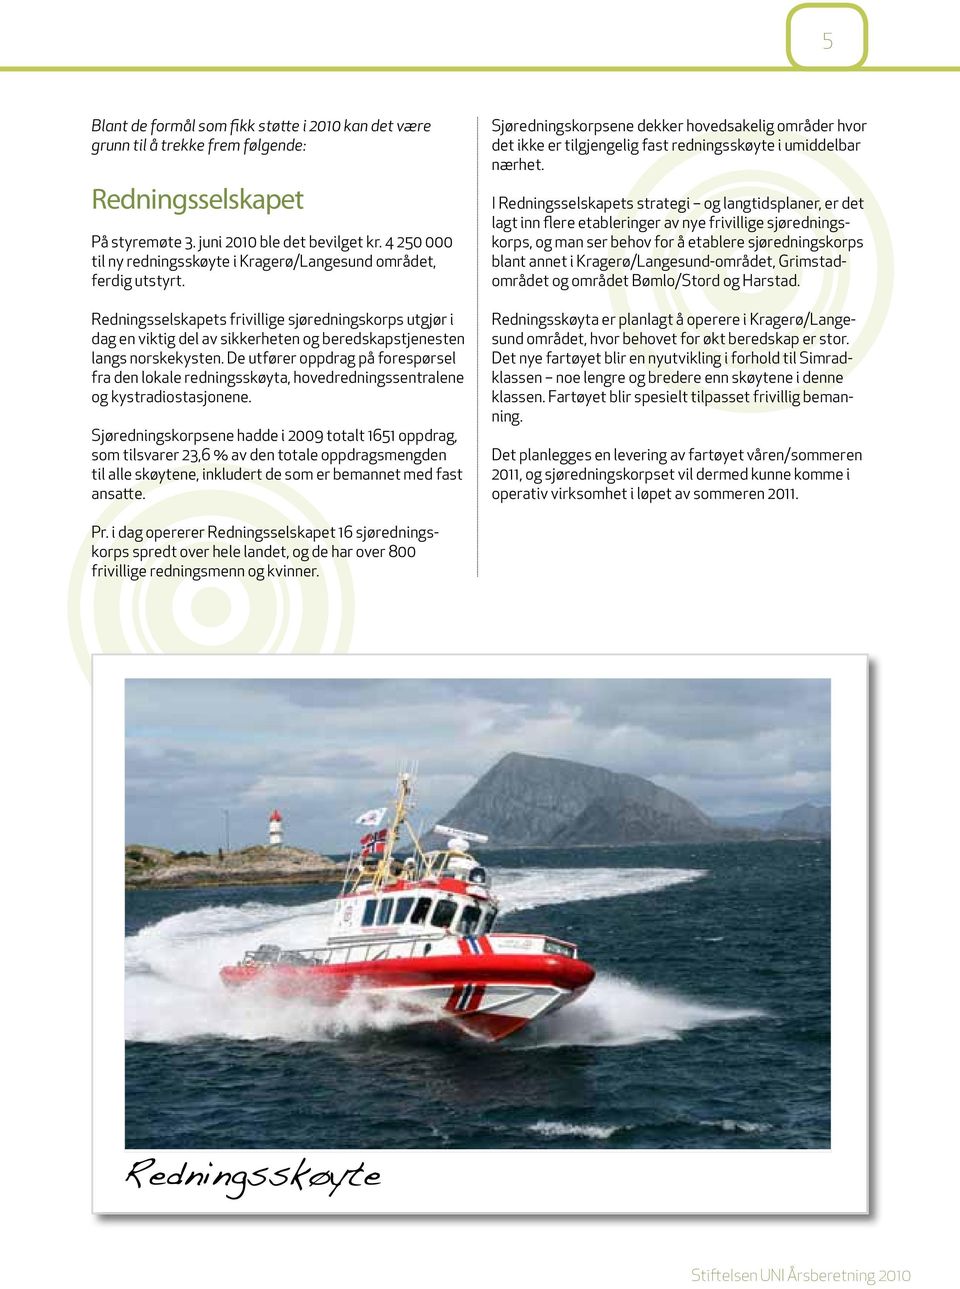 Redningsselskapets frivillige sjøredningskorps utgjør i dag en viktig del av sikkerheten og beredskapstjenesten langs norskekysten.